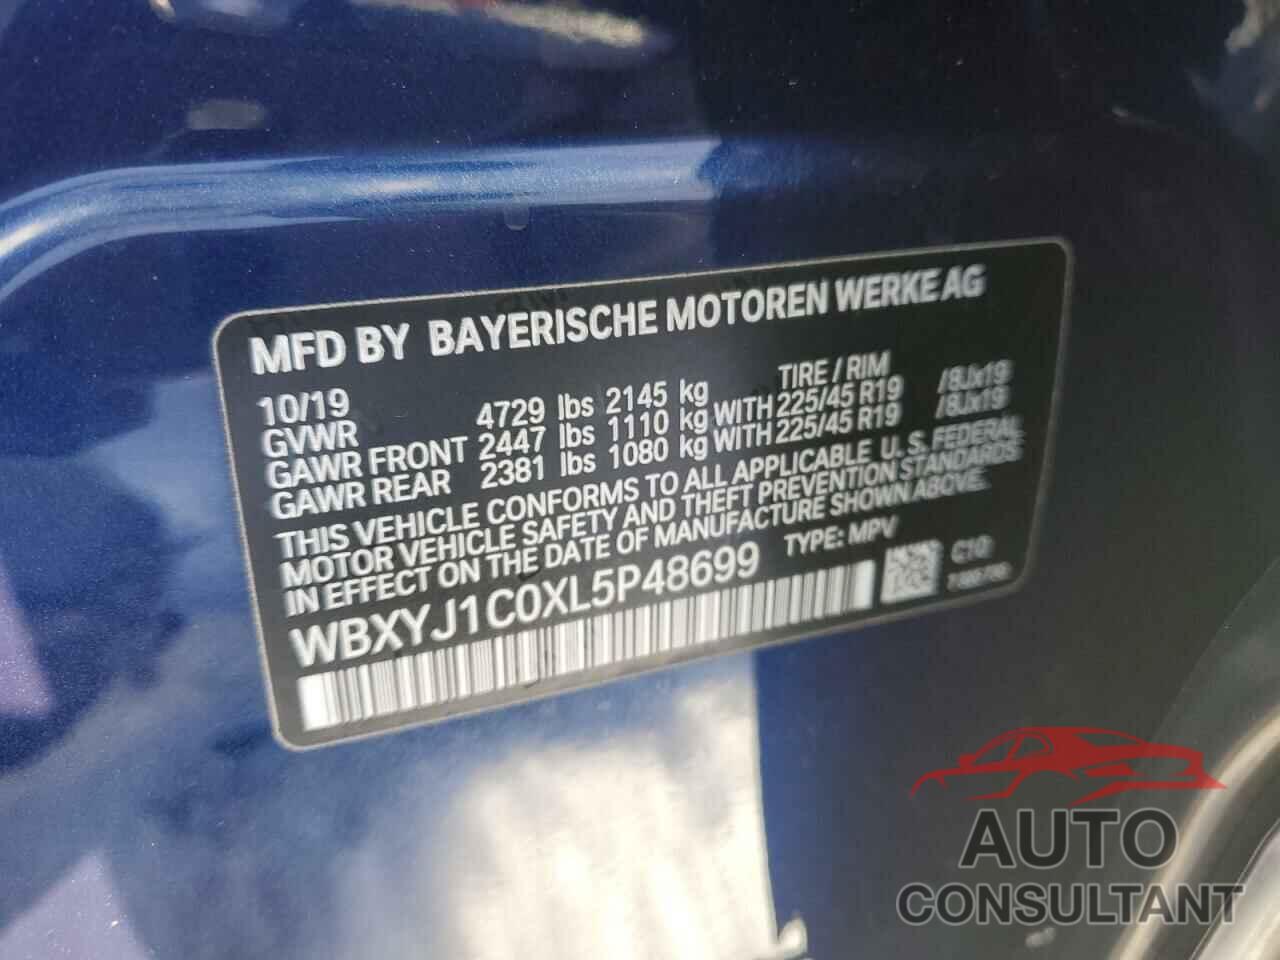 BMW X2 2020 - WBXYJ1C0XL5P48699